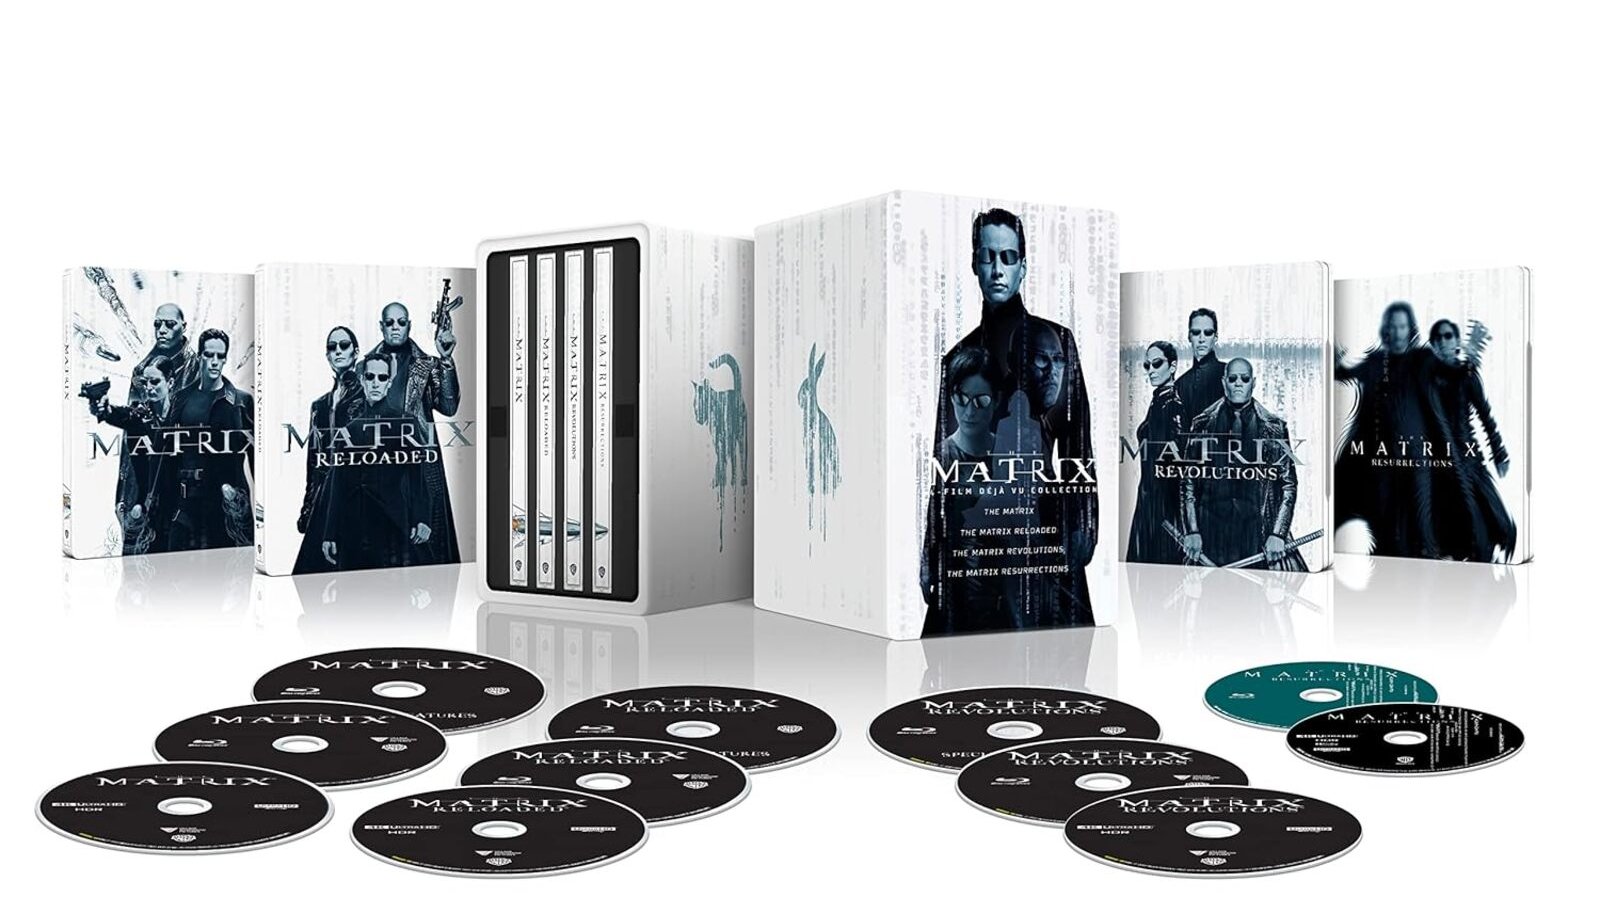 Matrix: la magnifica collection steelbook con tutti e 4 i film in 4K Ultra HD è scesa di prezzo su Amazon